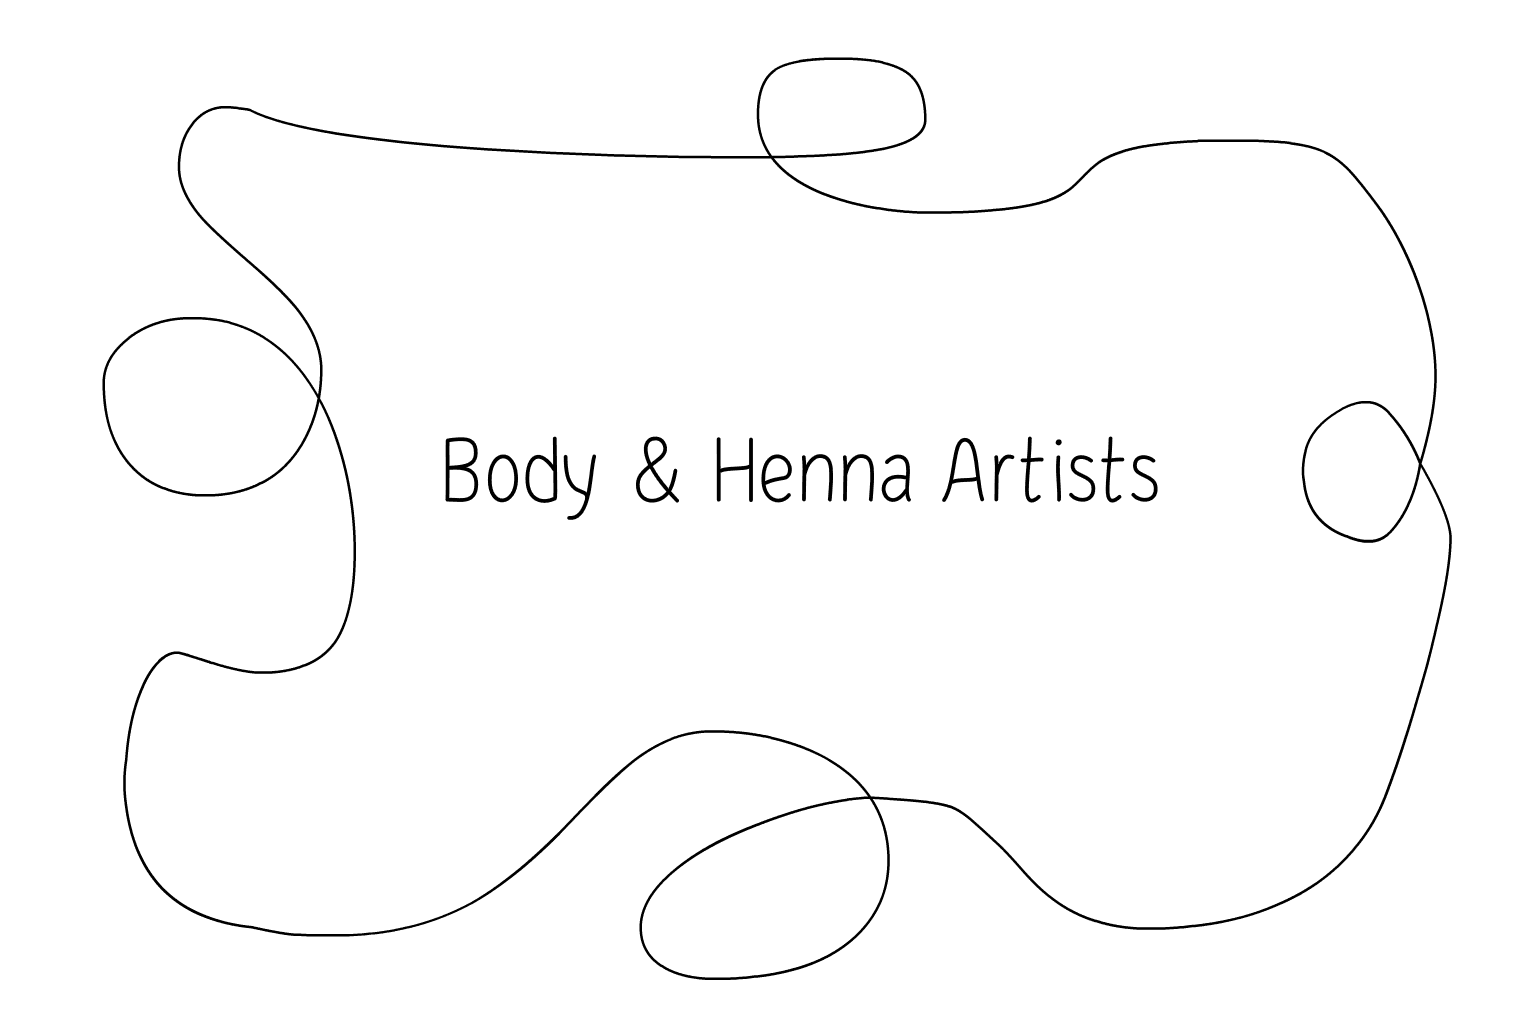 Ilustração de Henna Artists